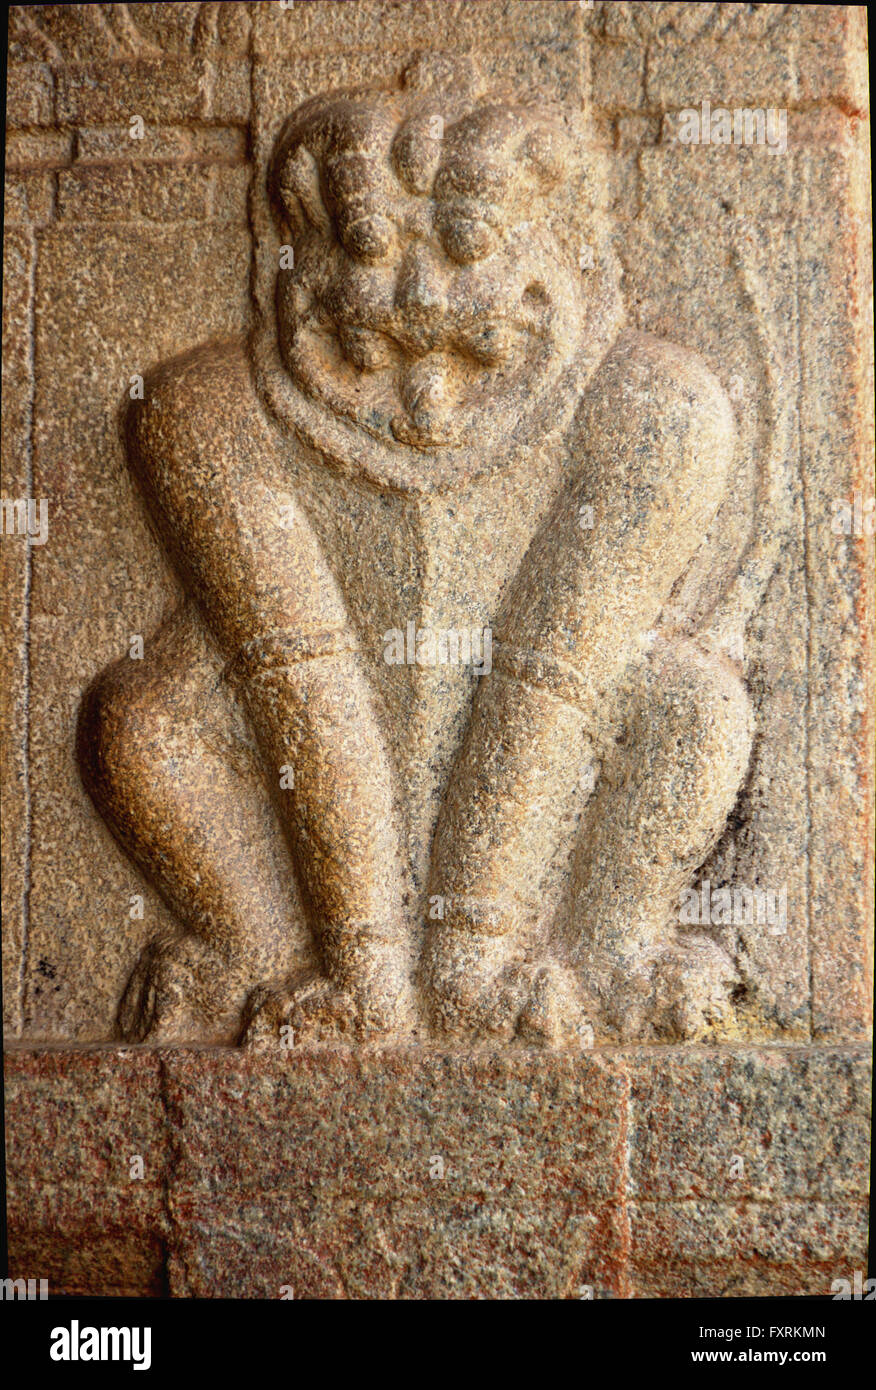 Umoristico postura seduta di Lion su pilastri in pietra a Narasimha tempio in Nandi colline nei pressi di Bengaluru, Karnataka, India, Asia Foto Stock